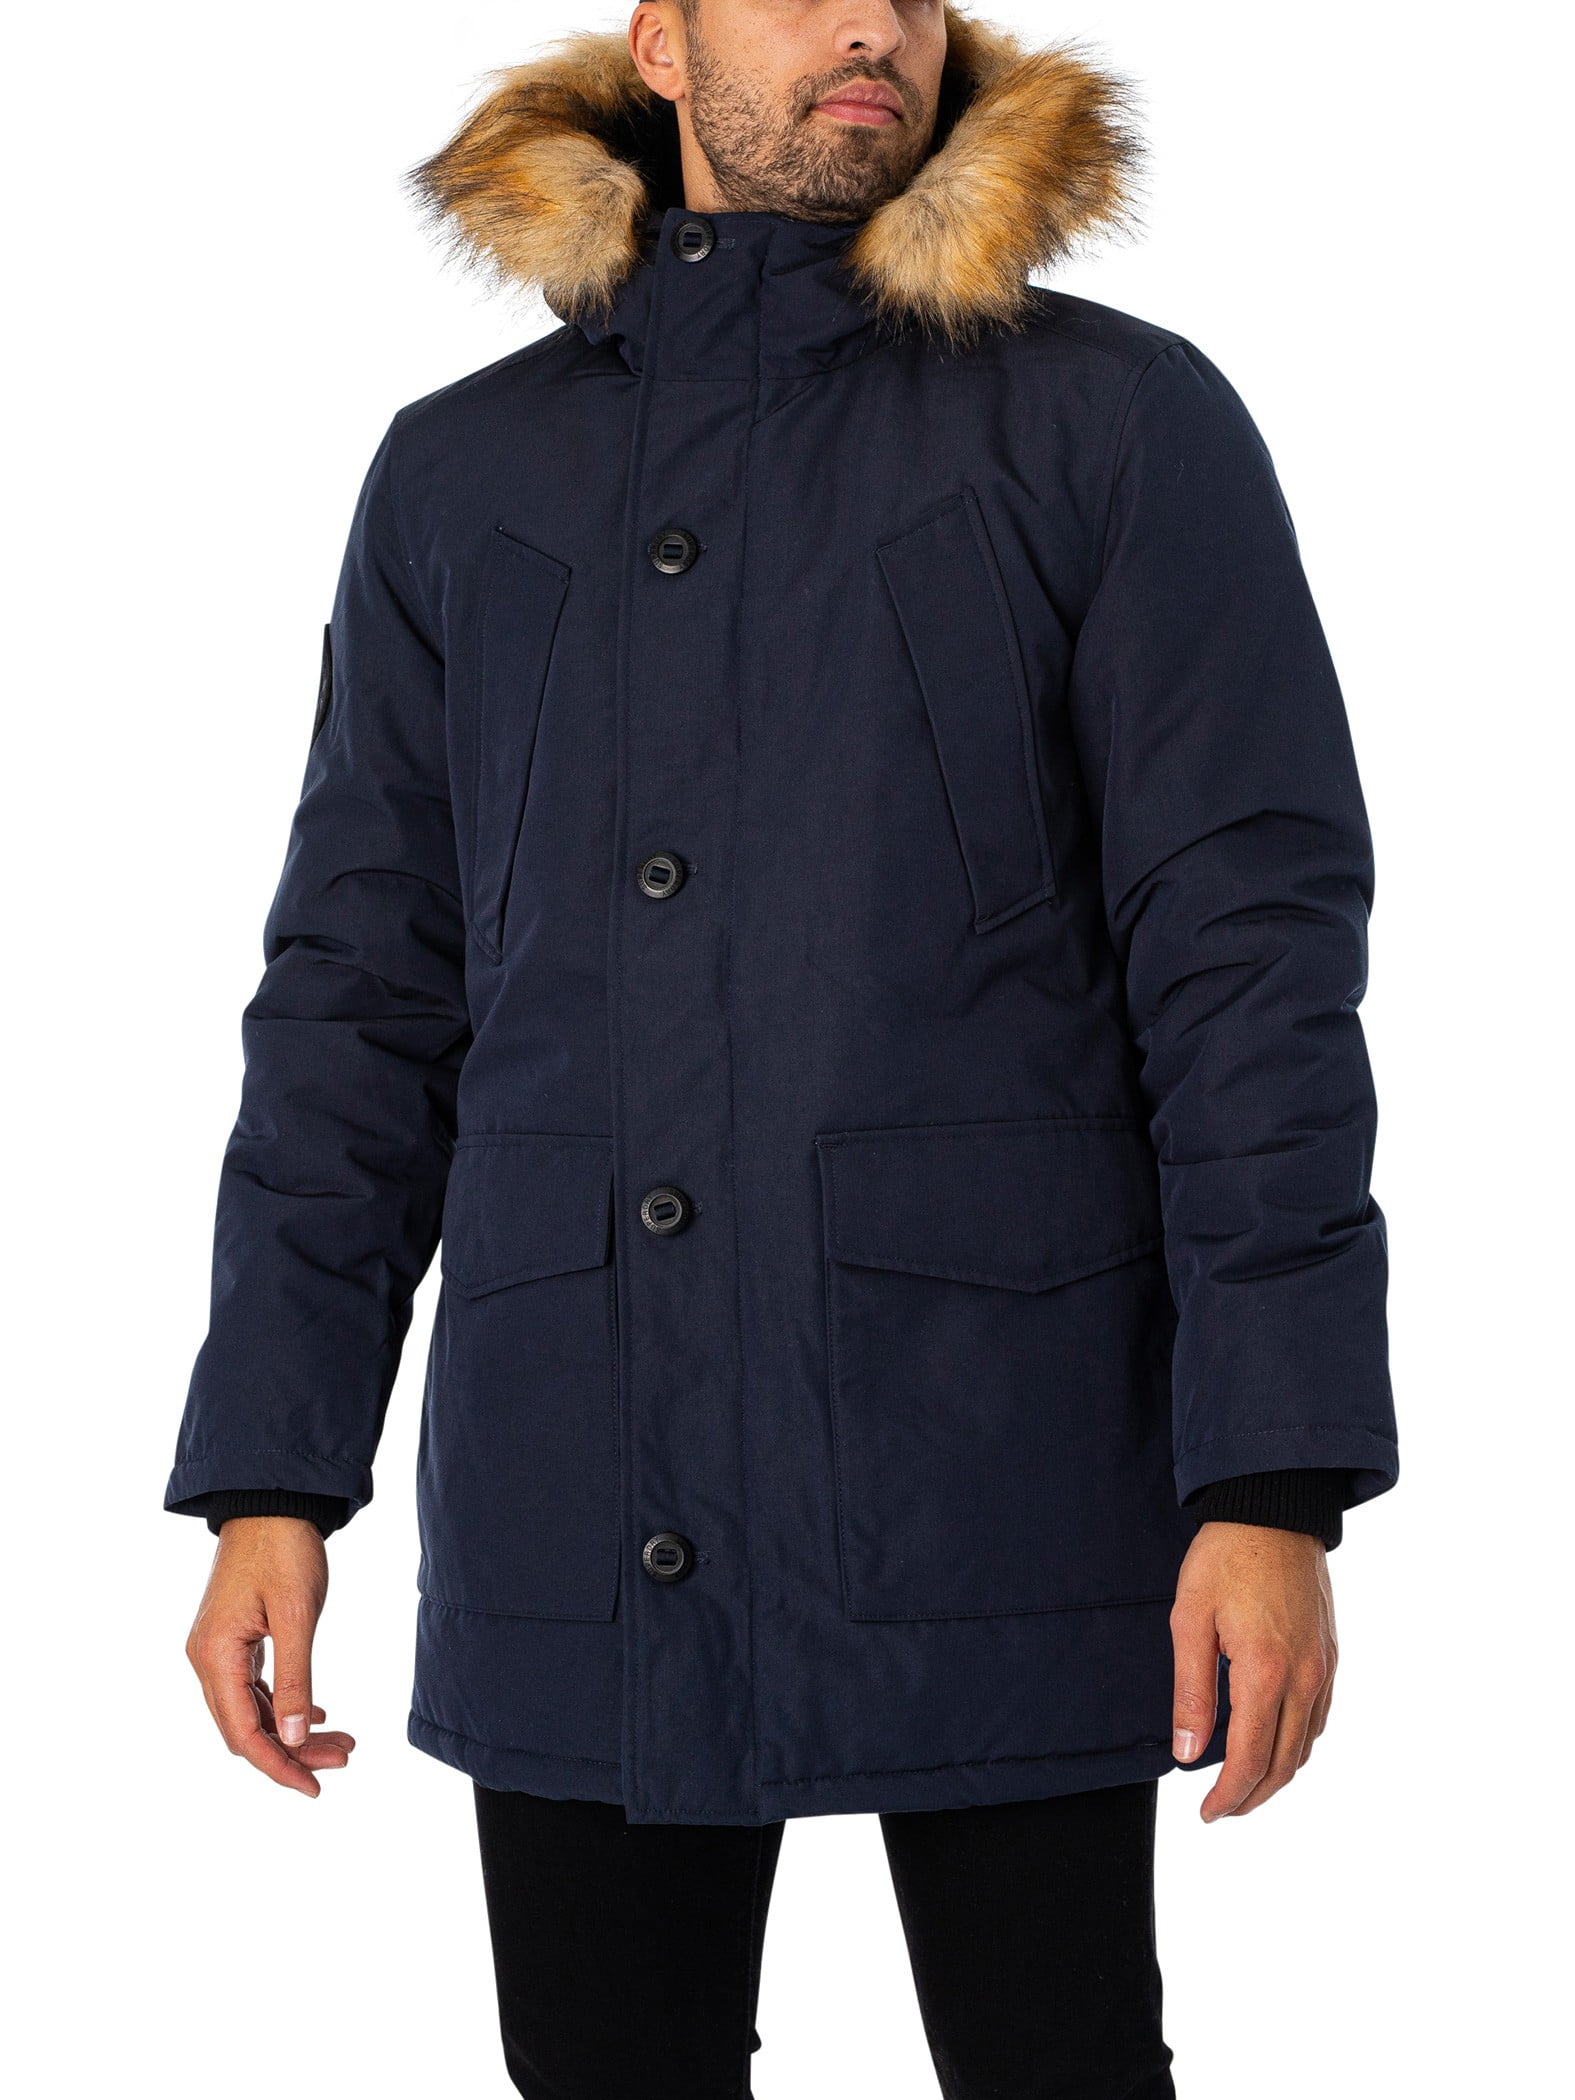 Superdry Everest Faux Fur Hooded Parka Jacket, Blue